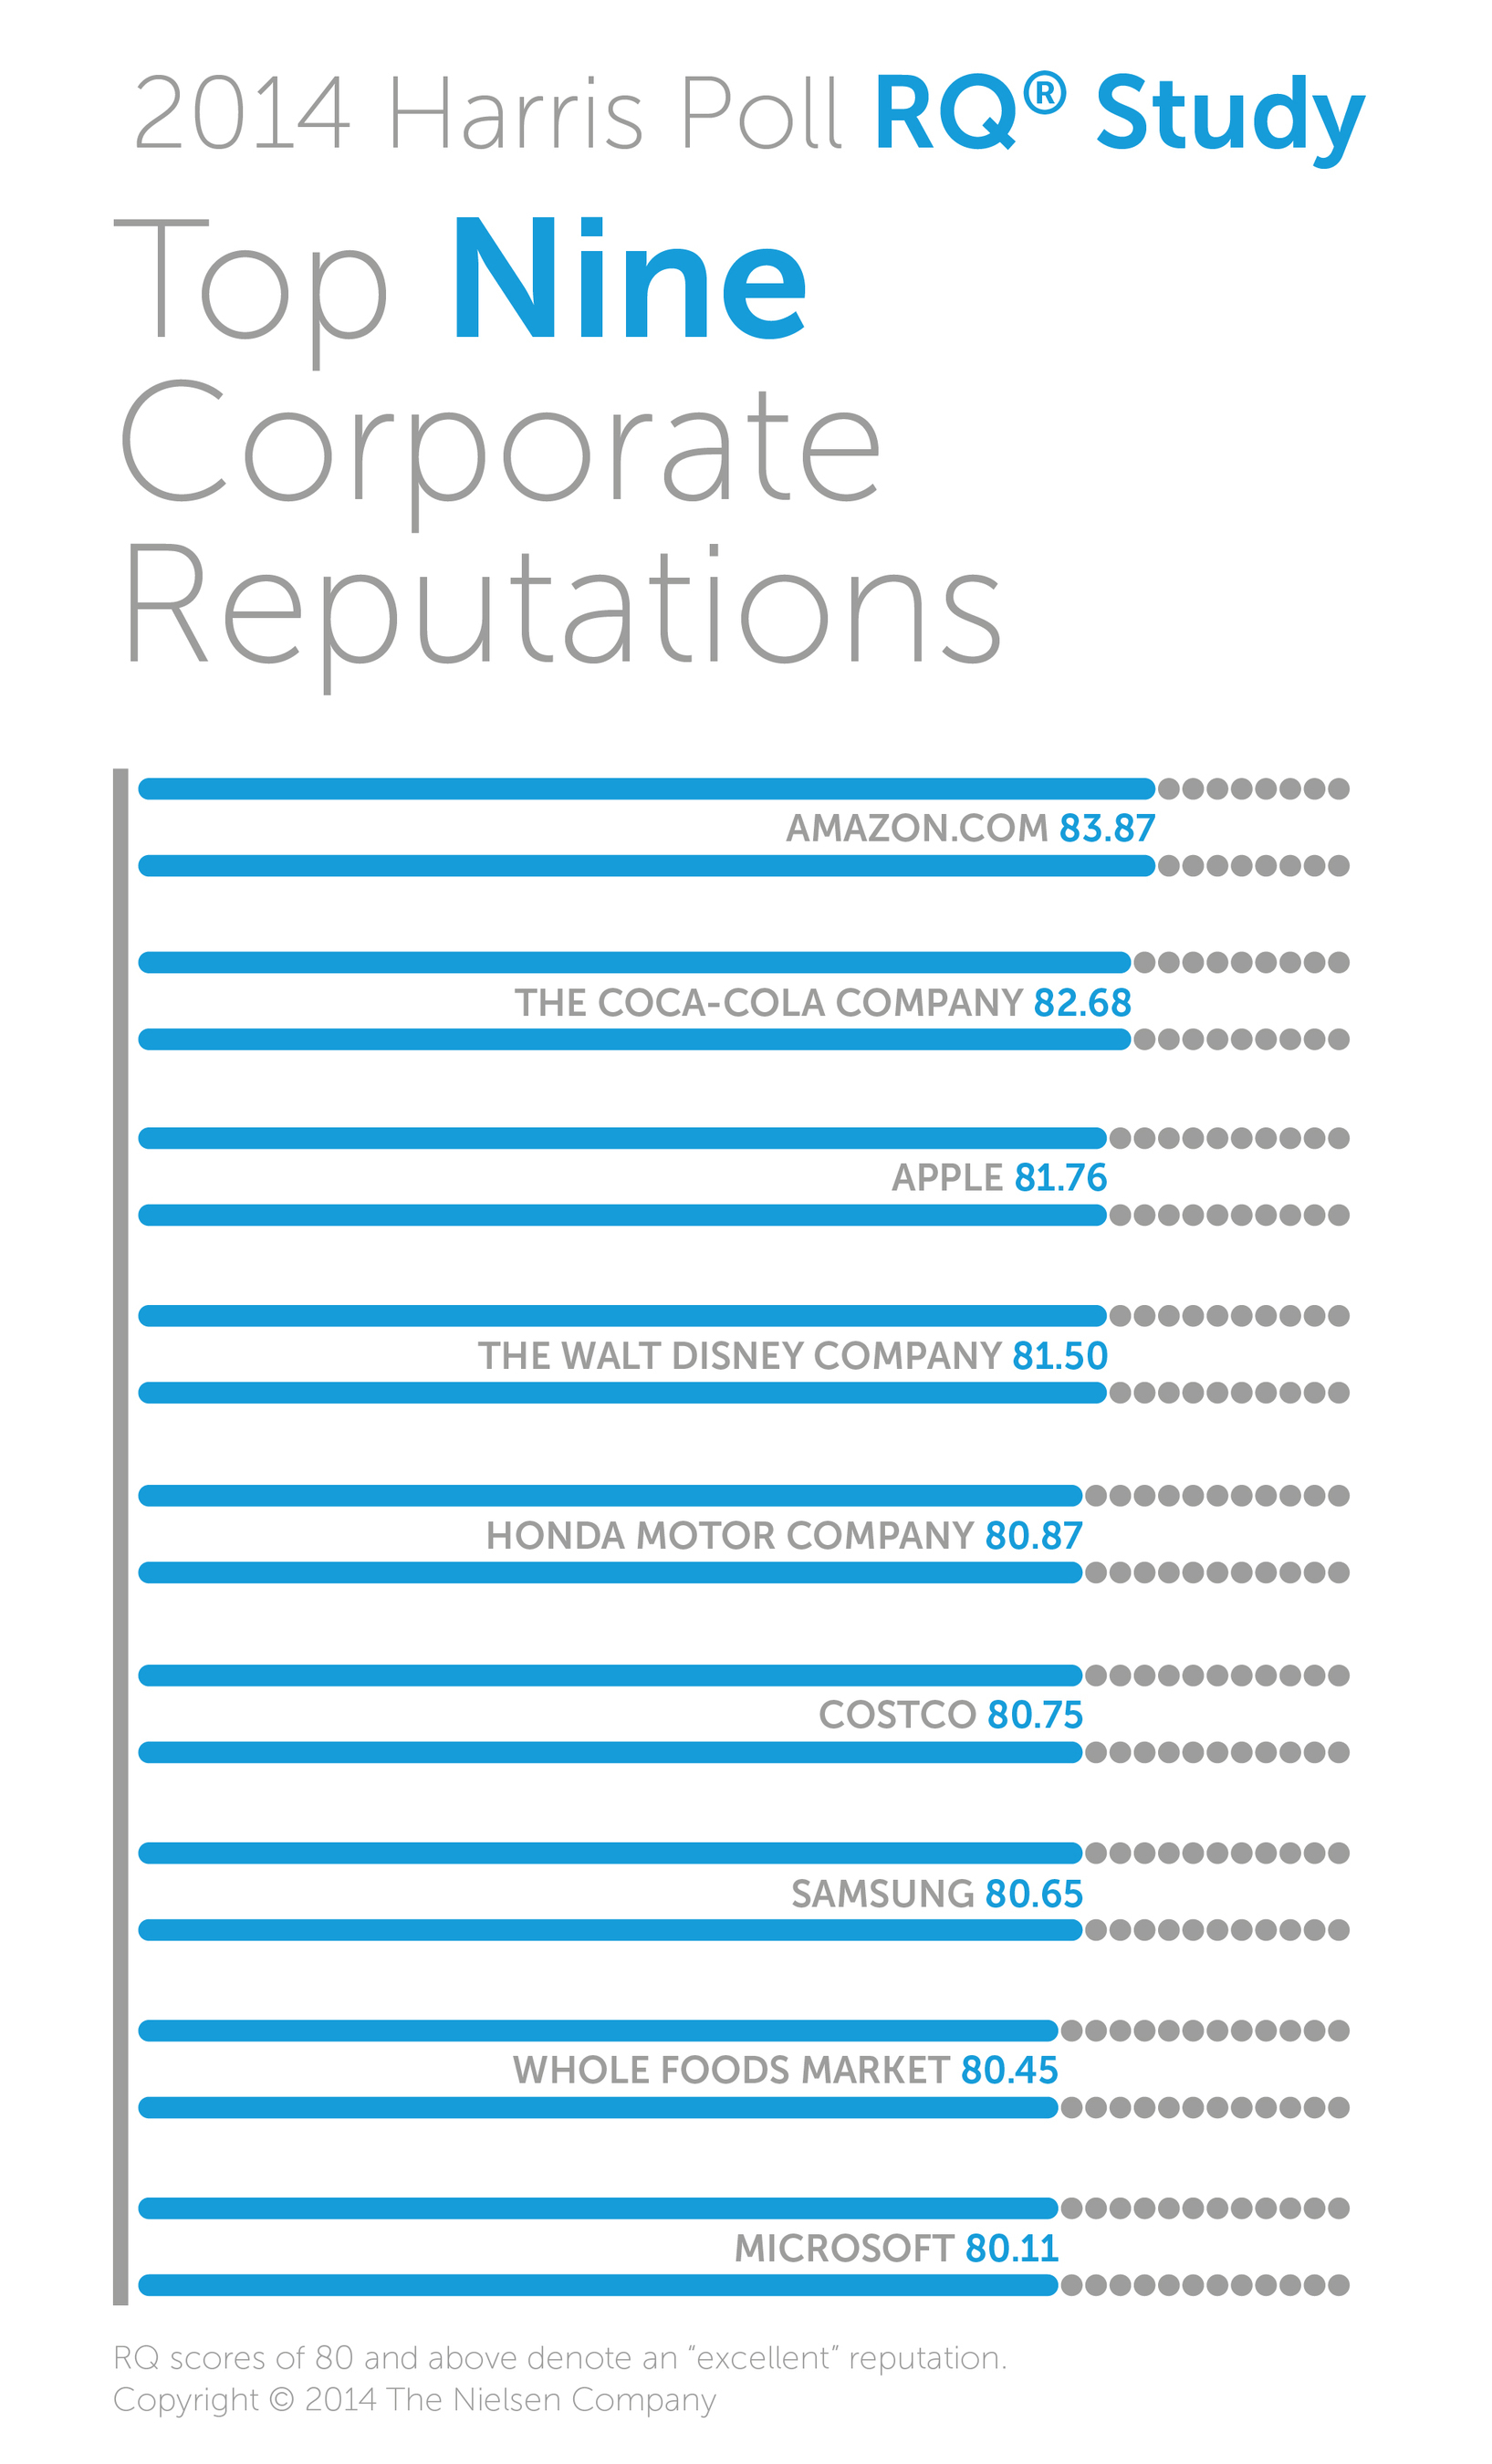 2014 Harris Poll RQ(R) Study: Top Nine Corporate Reputations. (PRNewsFoto/Harris Poll)